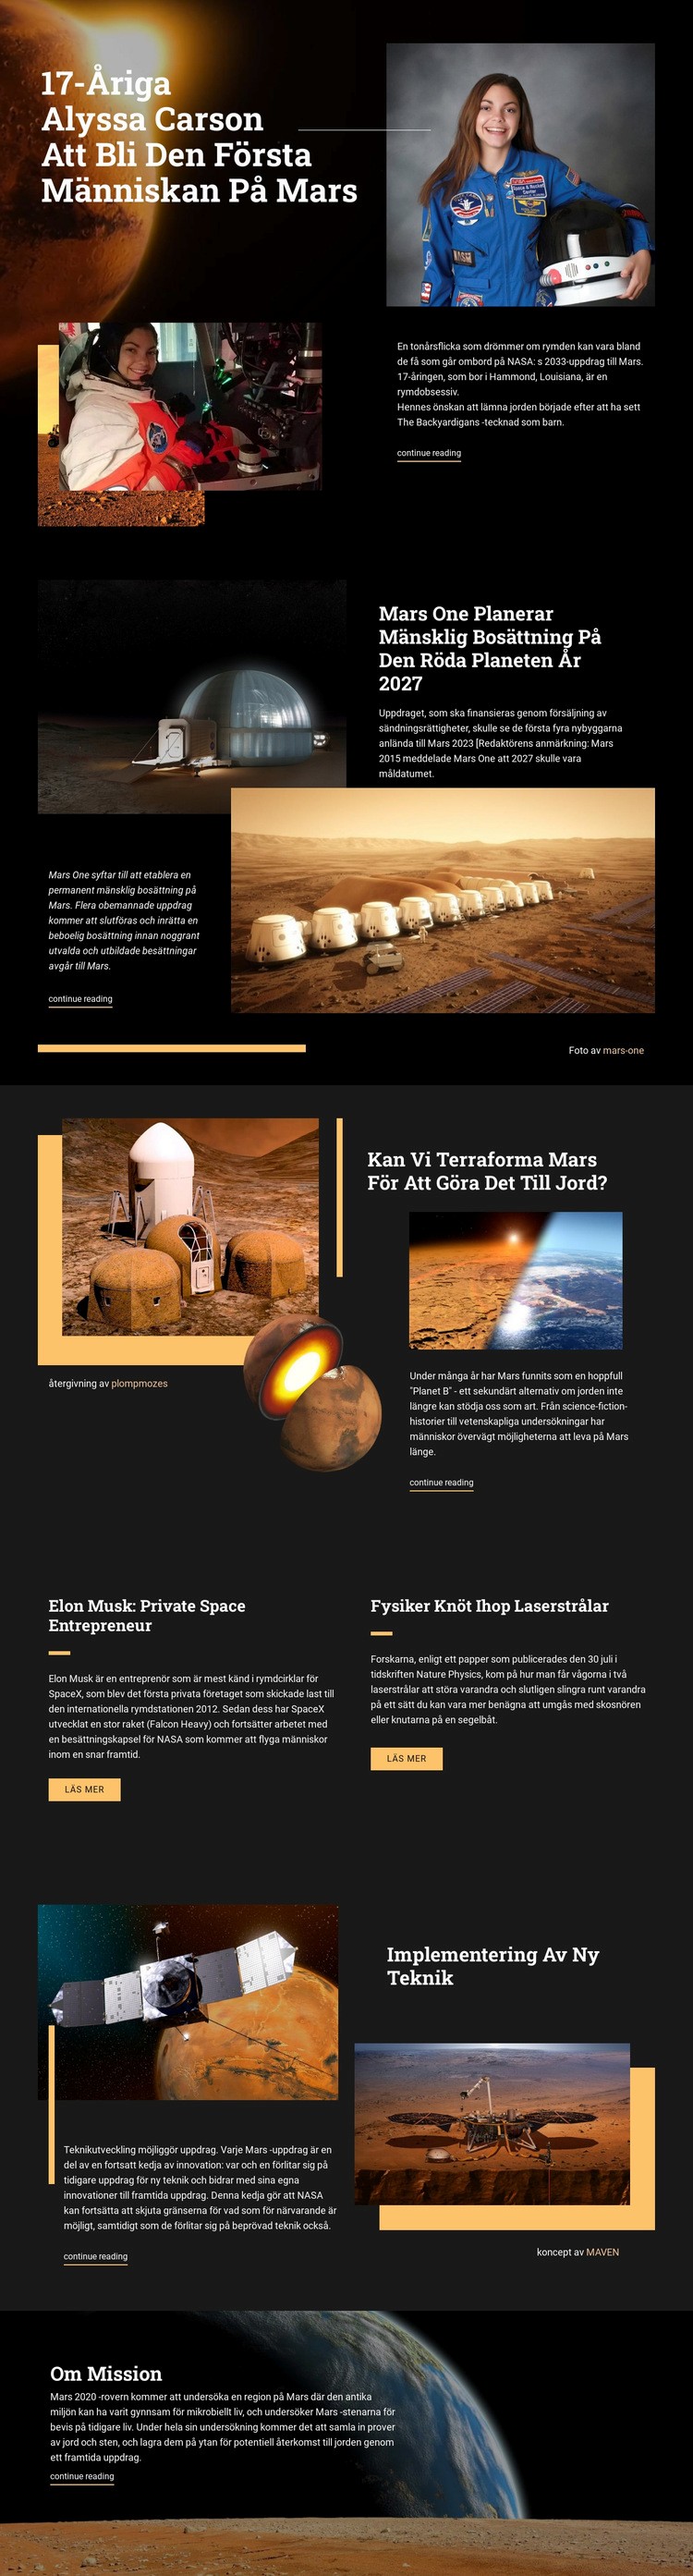 Första människan på Mars Webbplats mall